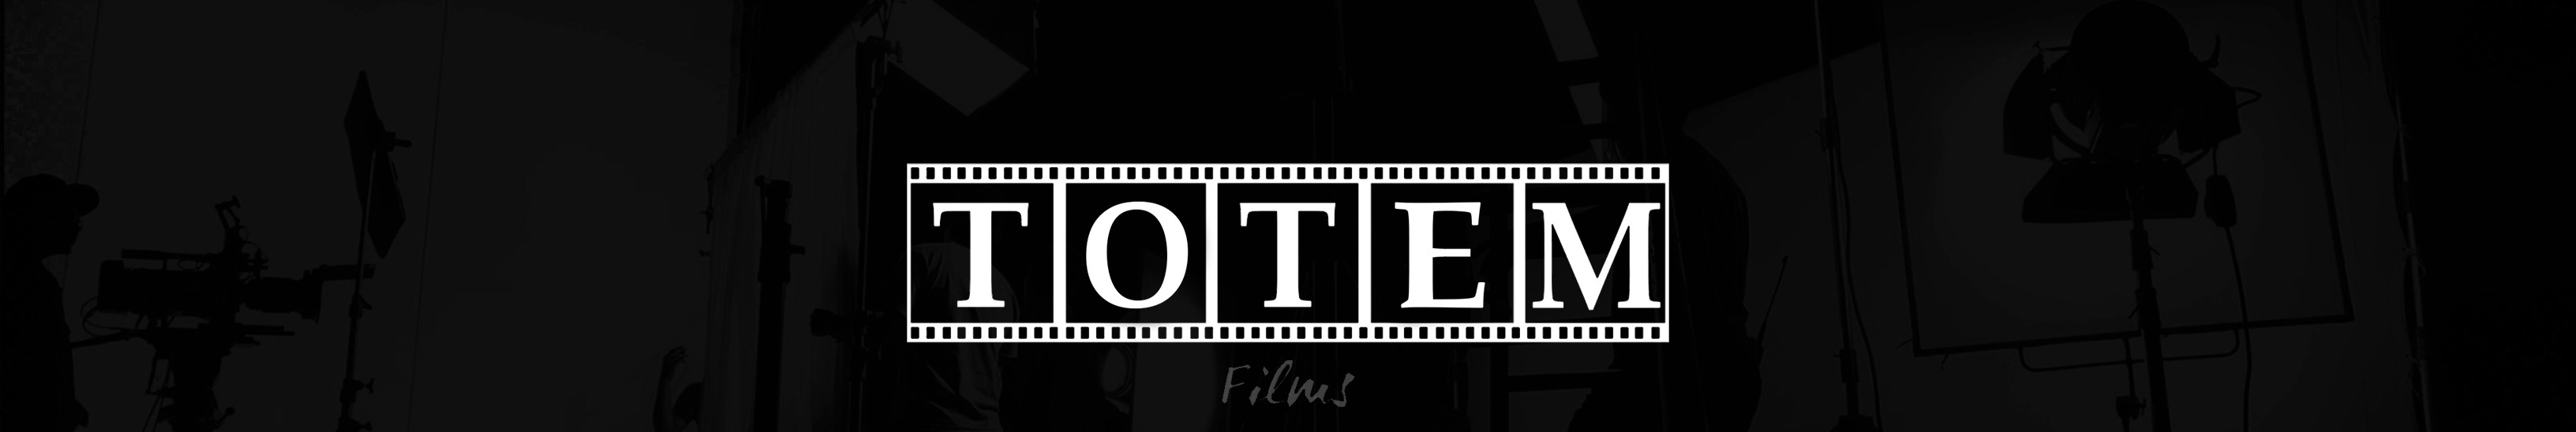 TOTEM Films's profile banner